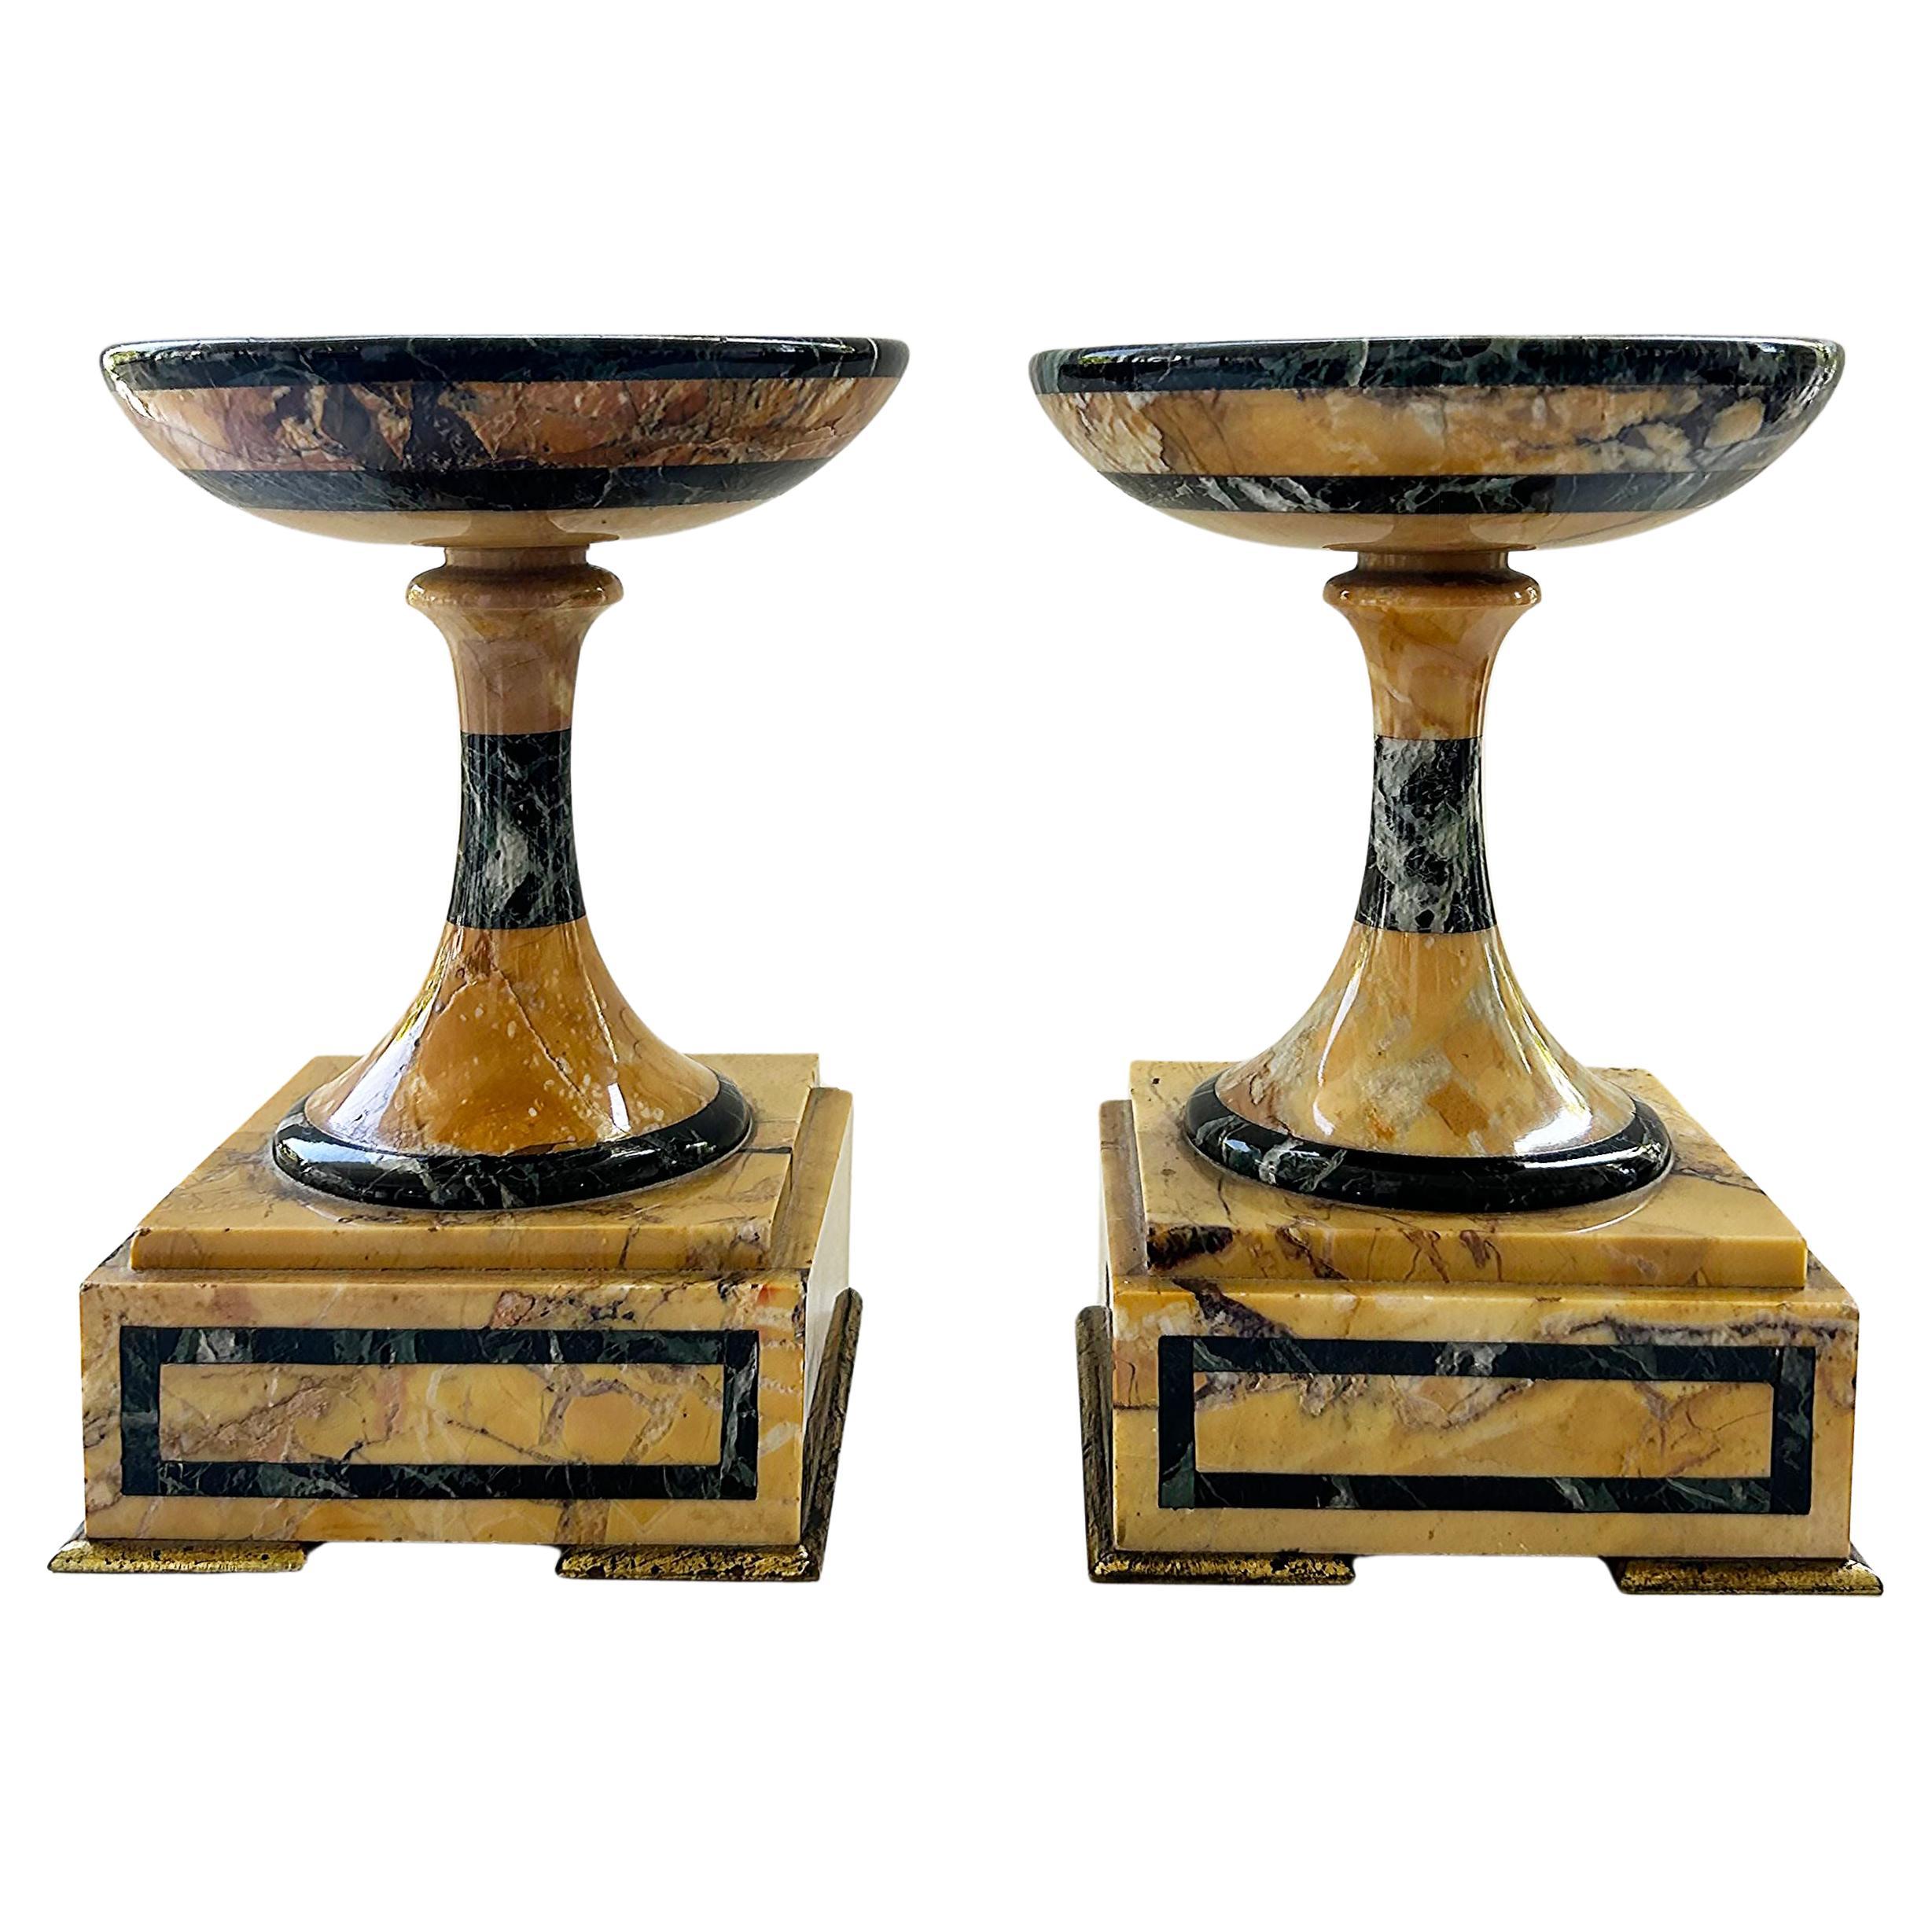 Paire de tazzas italiennes Grand Tour avec garnitures en marbre et bronze doré